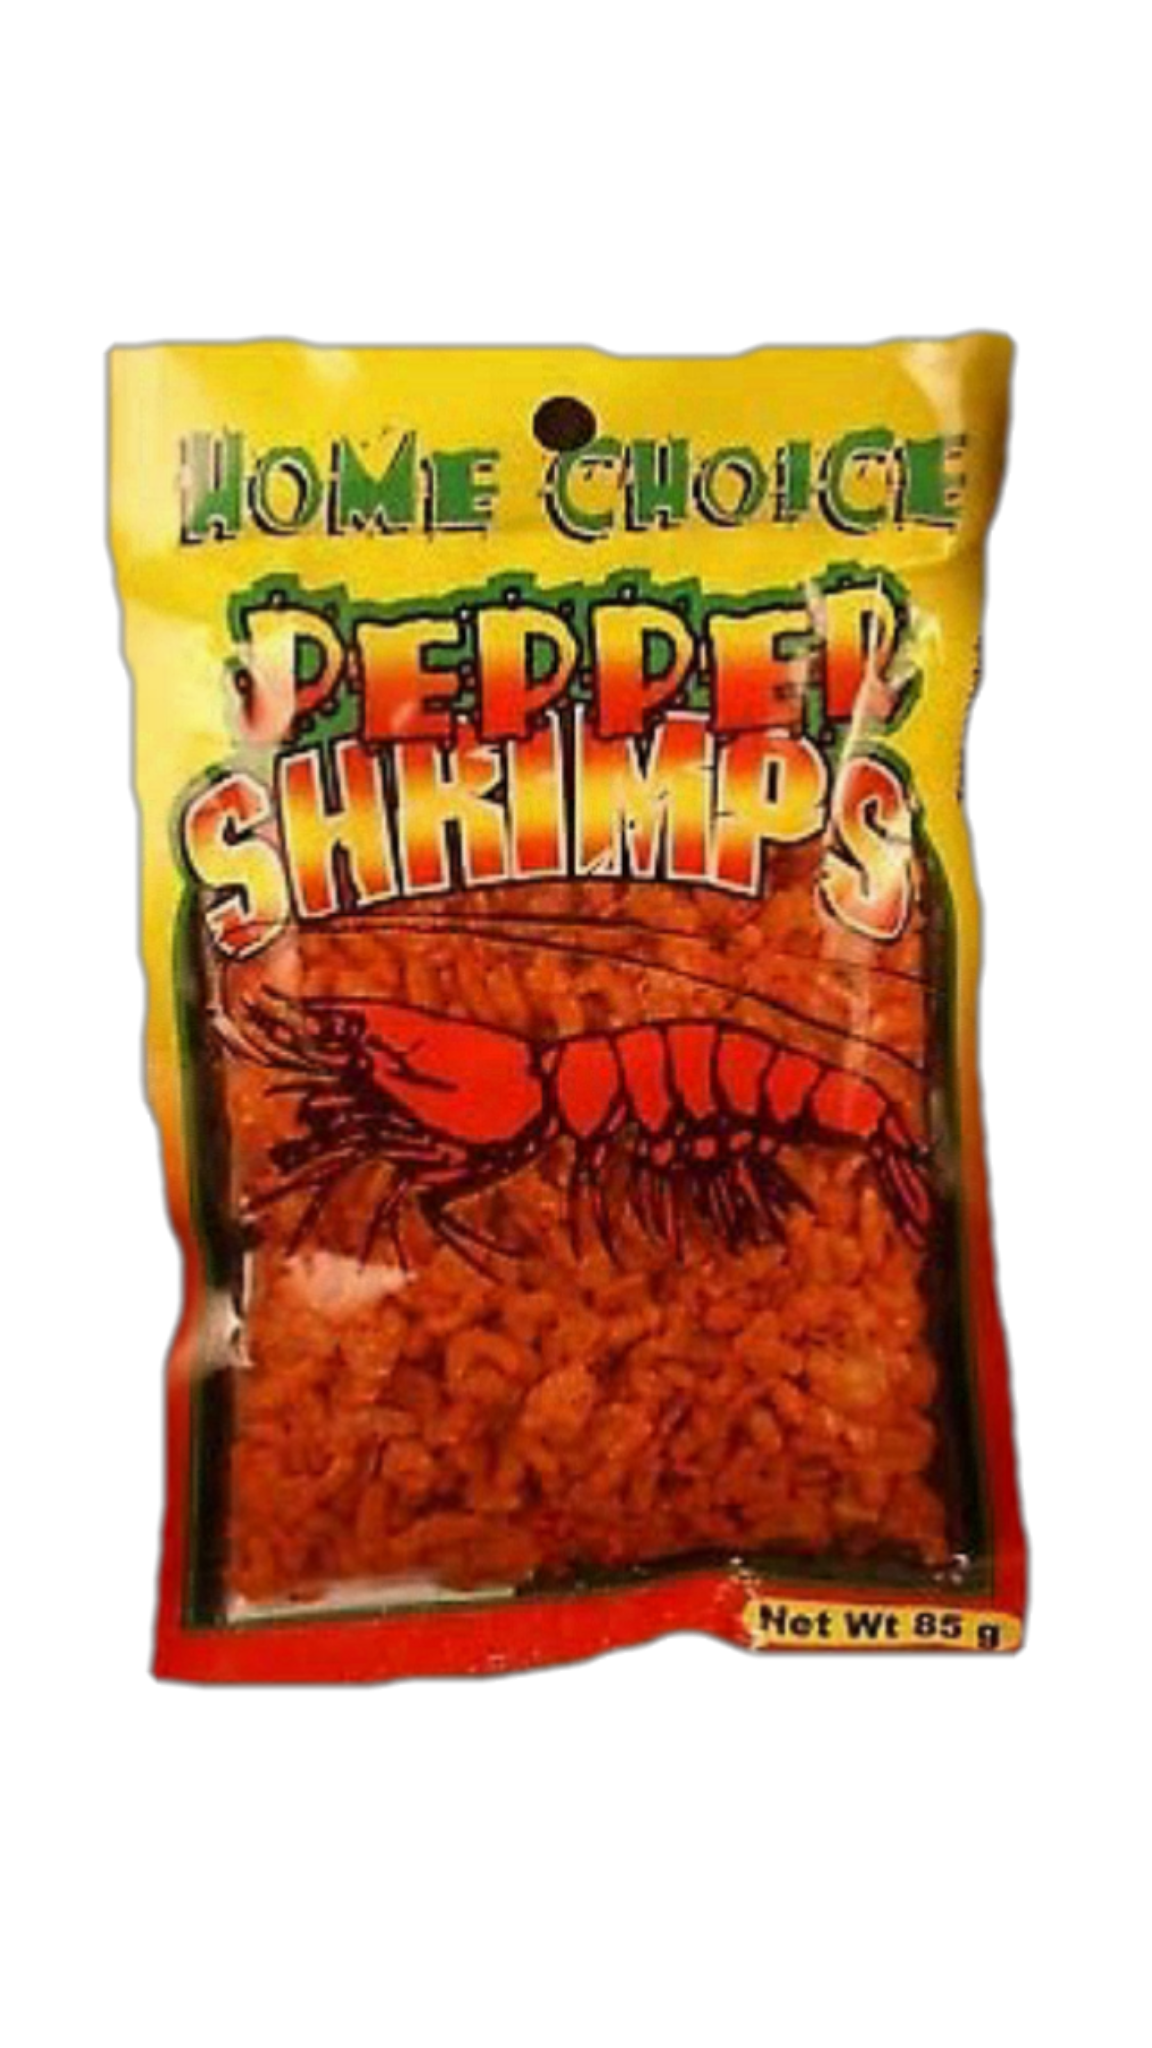 Peppered shrimp